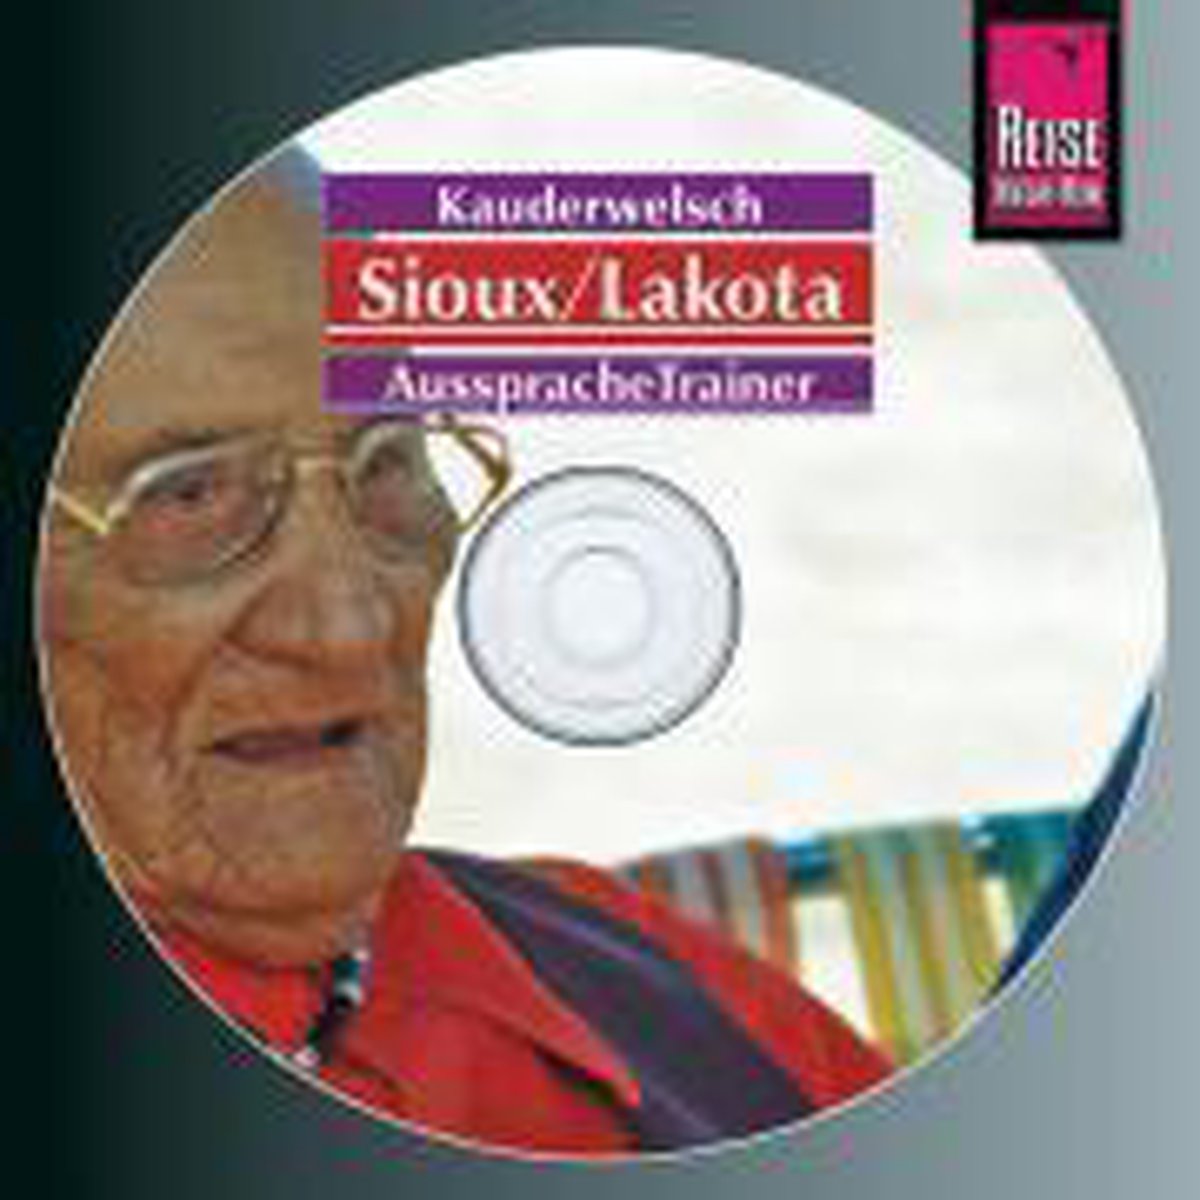 Sioux / Lakota. Wort für Wort. Kauderwelsch-CD - Rebecca Netzel